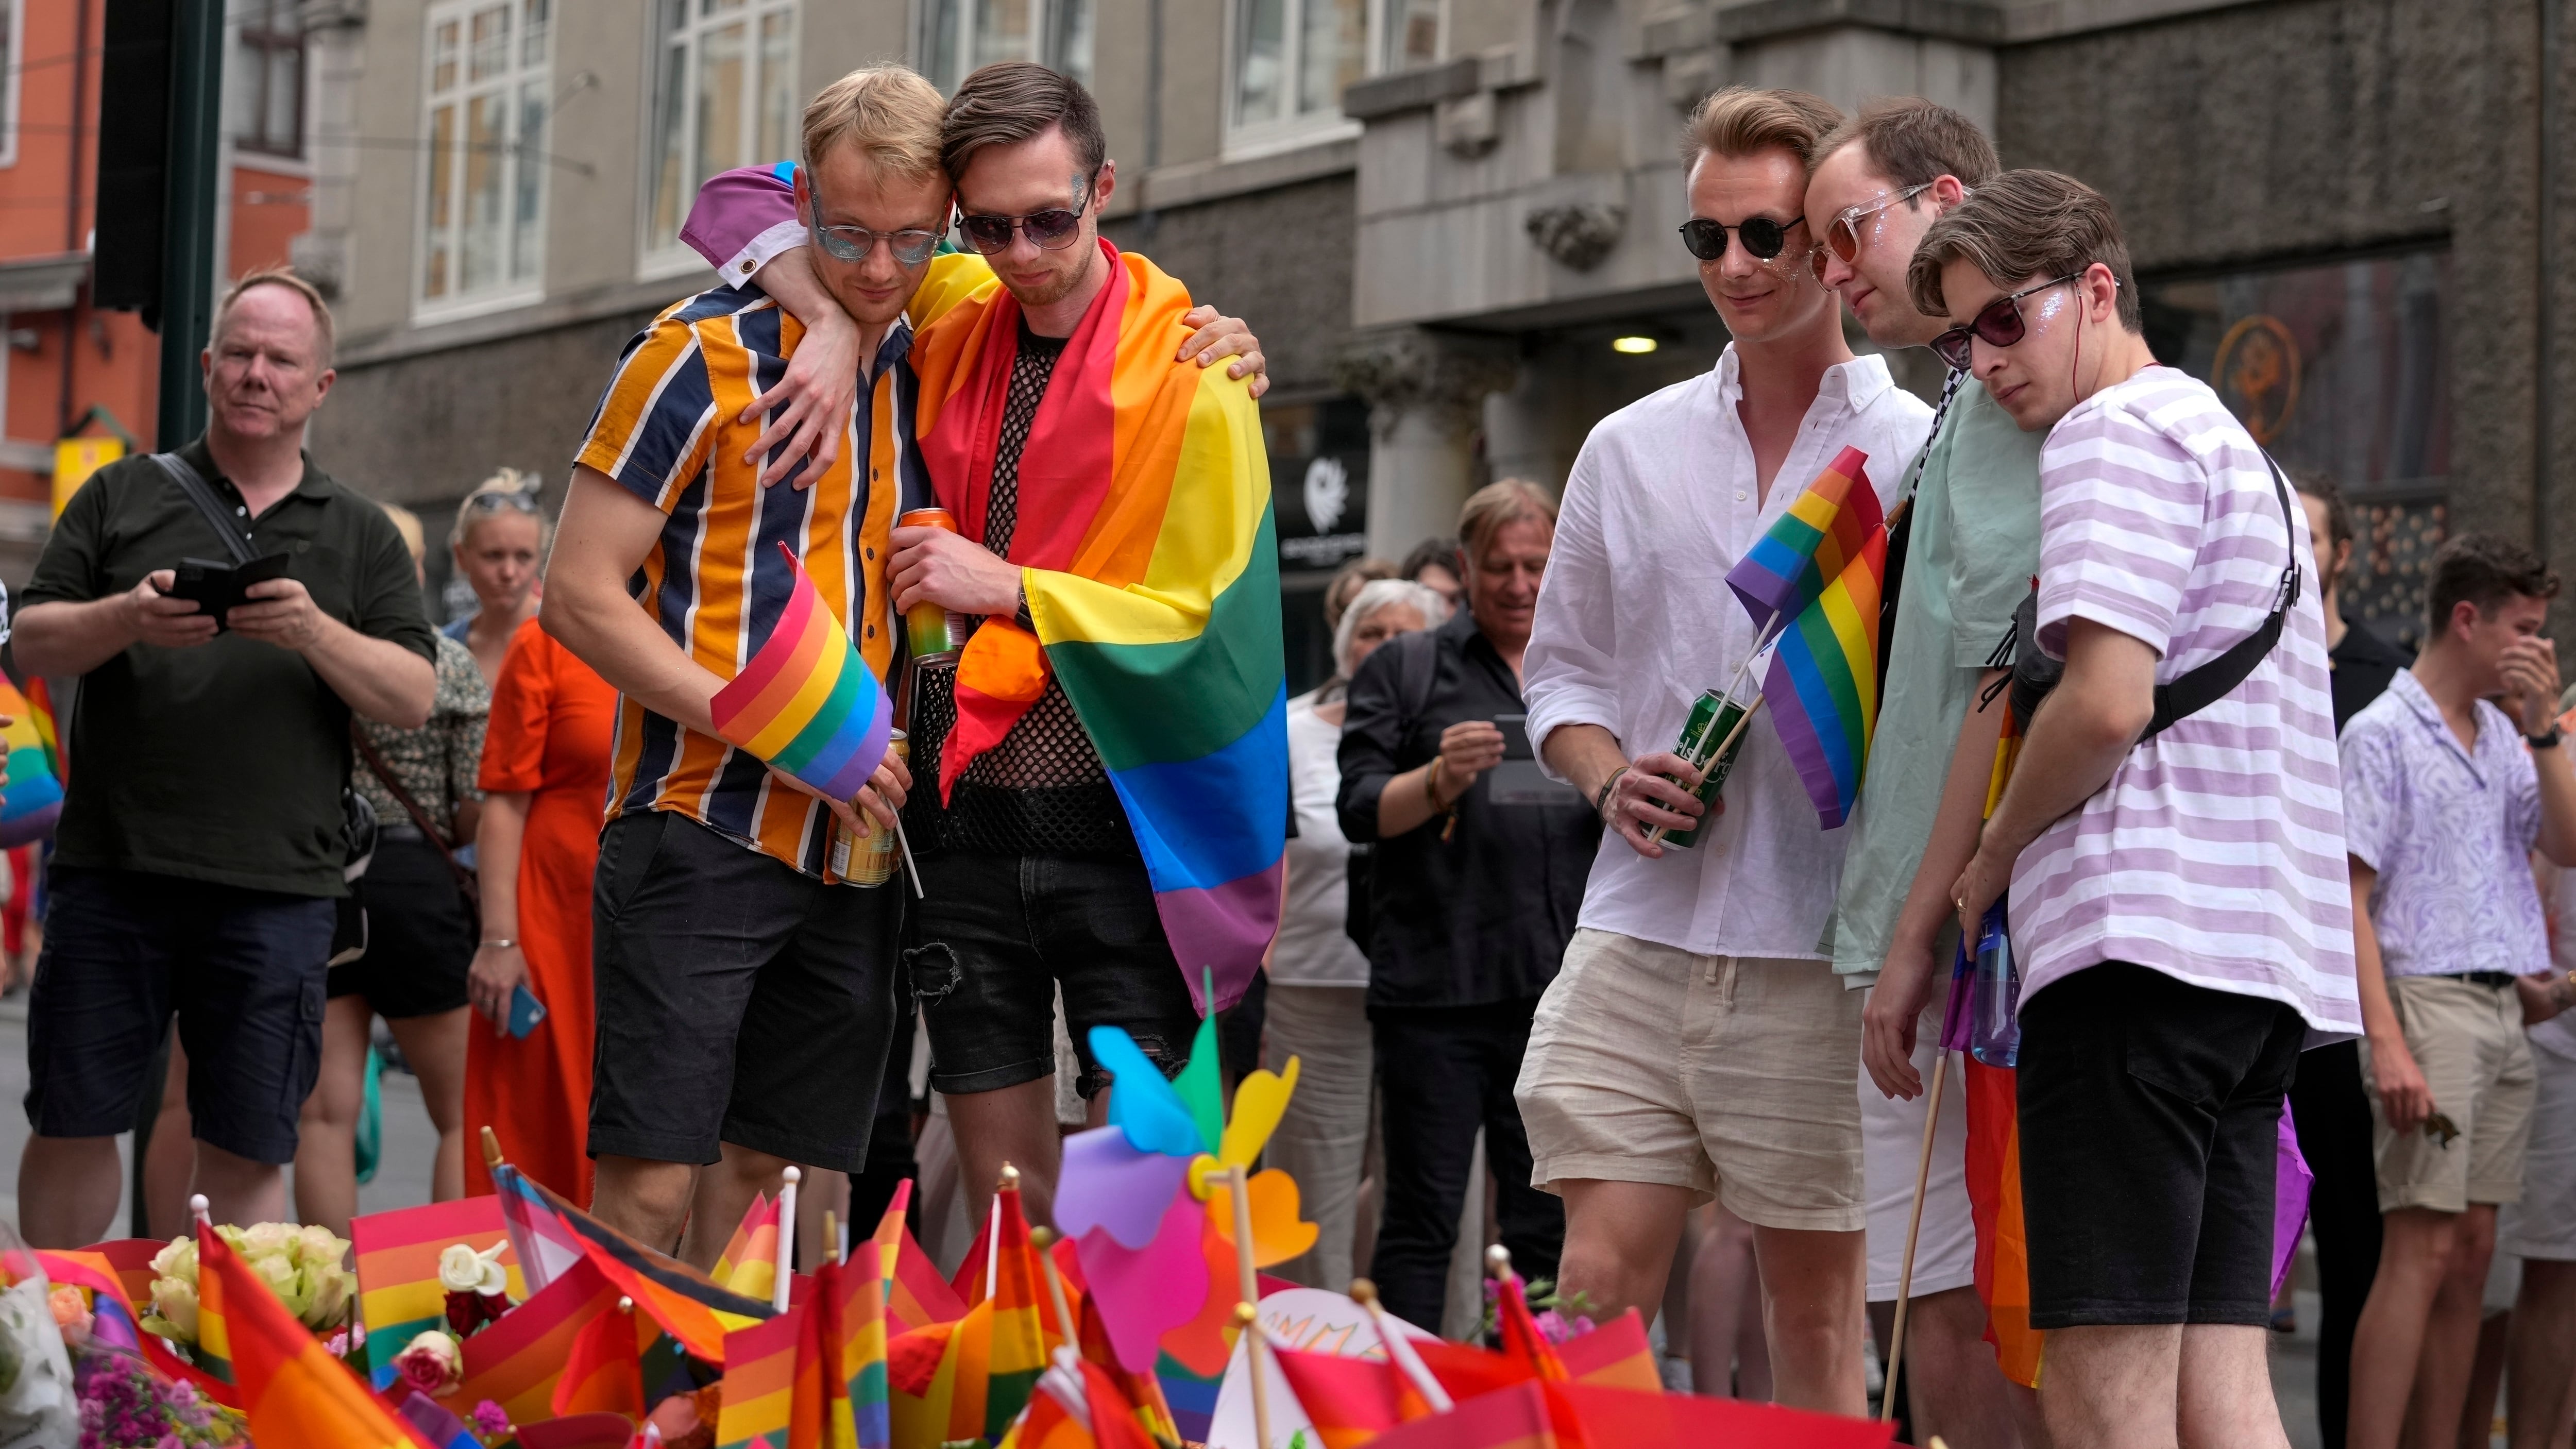 Agencia de seguridad es duramente criticada por no evitar el ataque en desfile LGBTQ